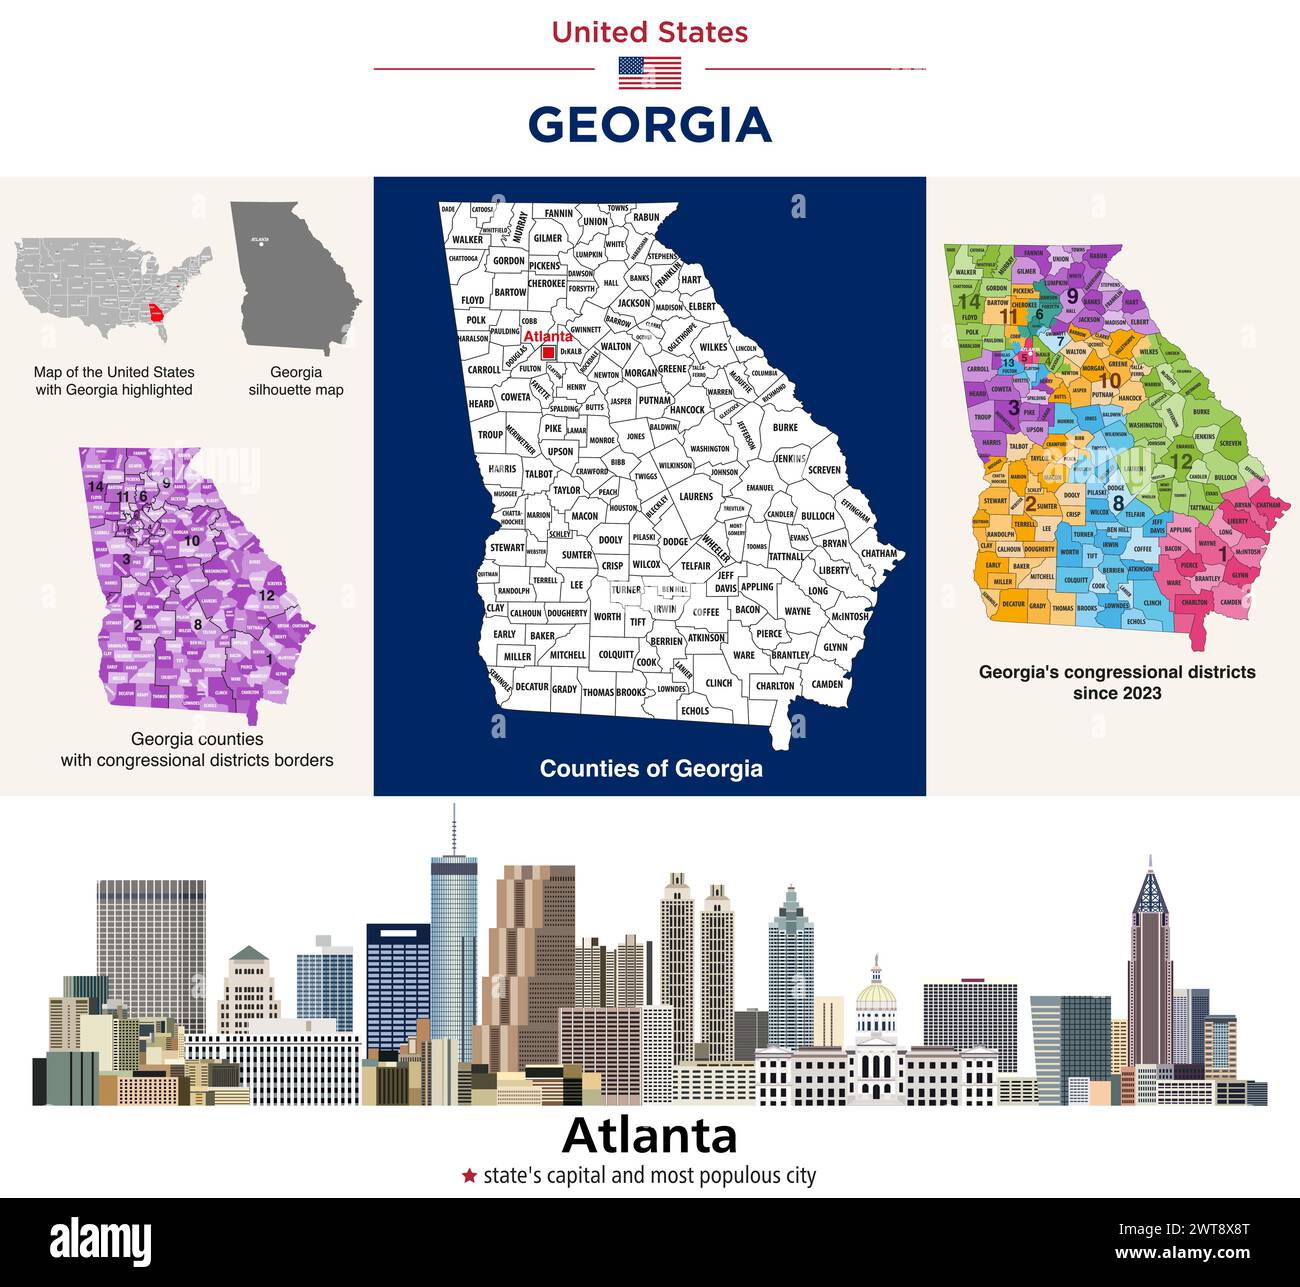 Georgia Countys Karte und Kongressbezirke seit 2023 Karte. Skyline von Atlanta – Hauptstadt des Bundesstaates und bevölkerungsreichste Stadt. Vektorsatz Stock Vektor